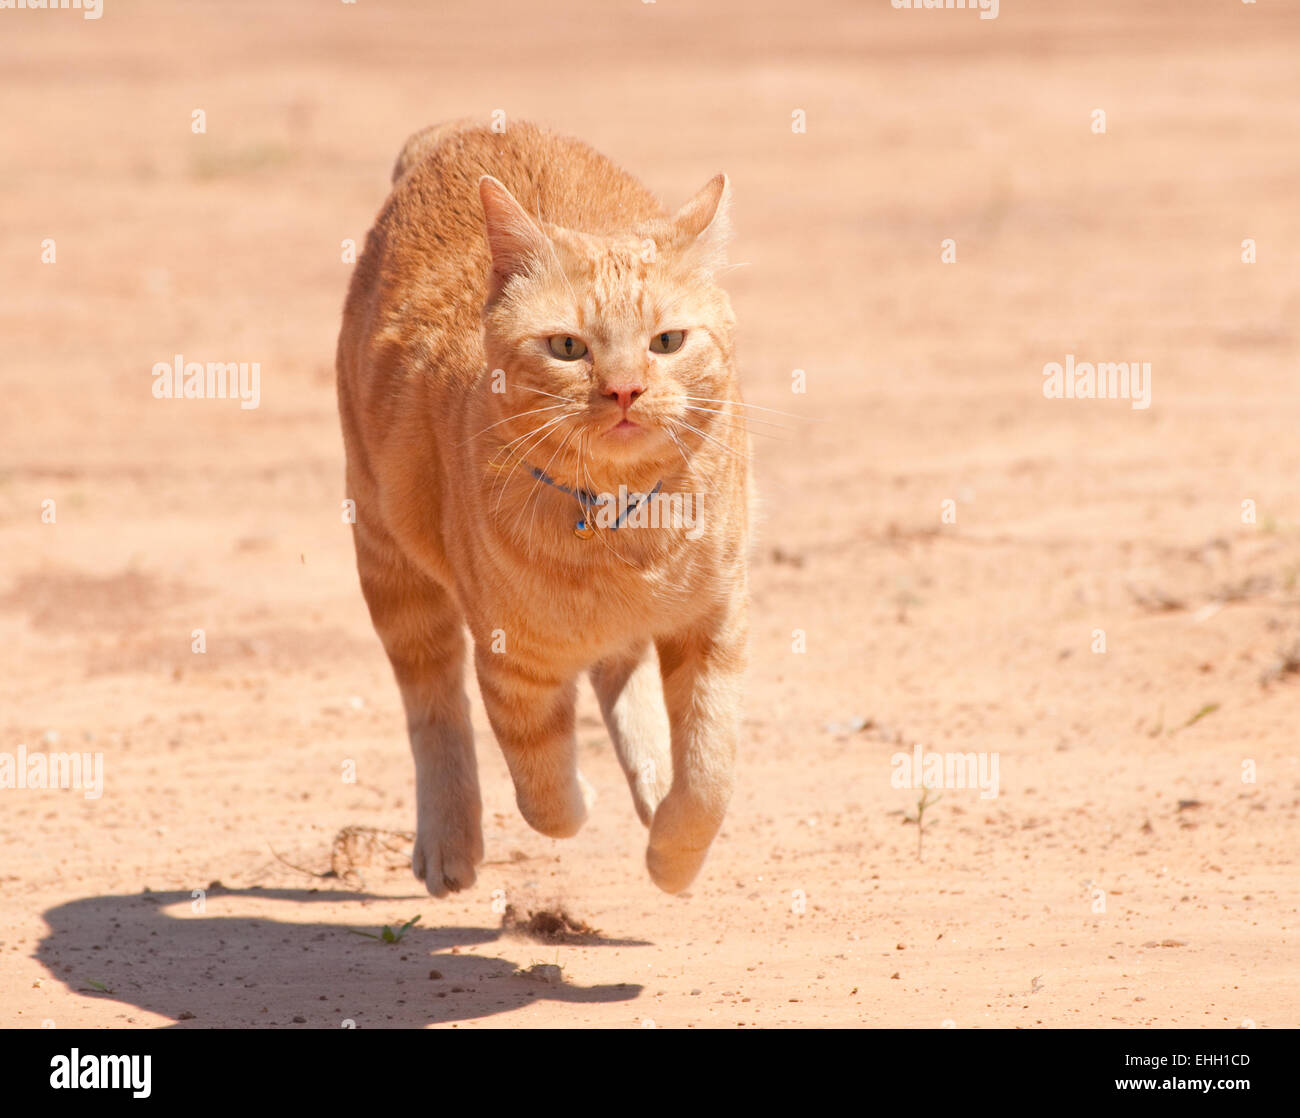 Orange tabby cat running full speed across red sand Stock Photo